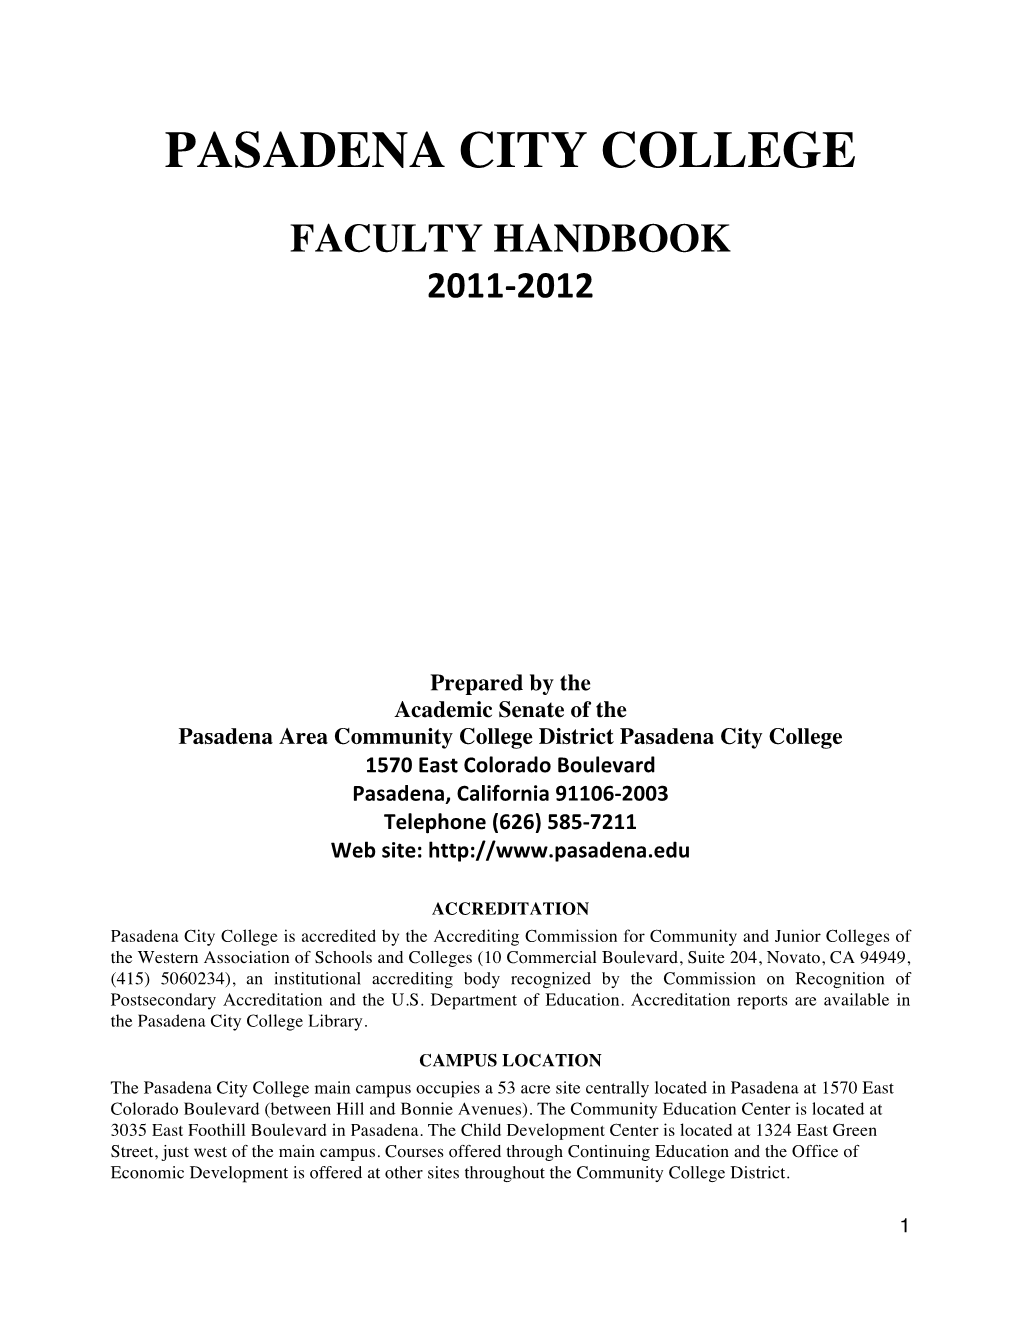 Faculty Handbook for Pasadena City College